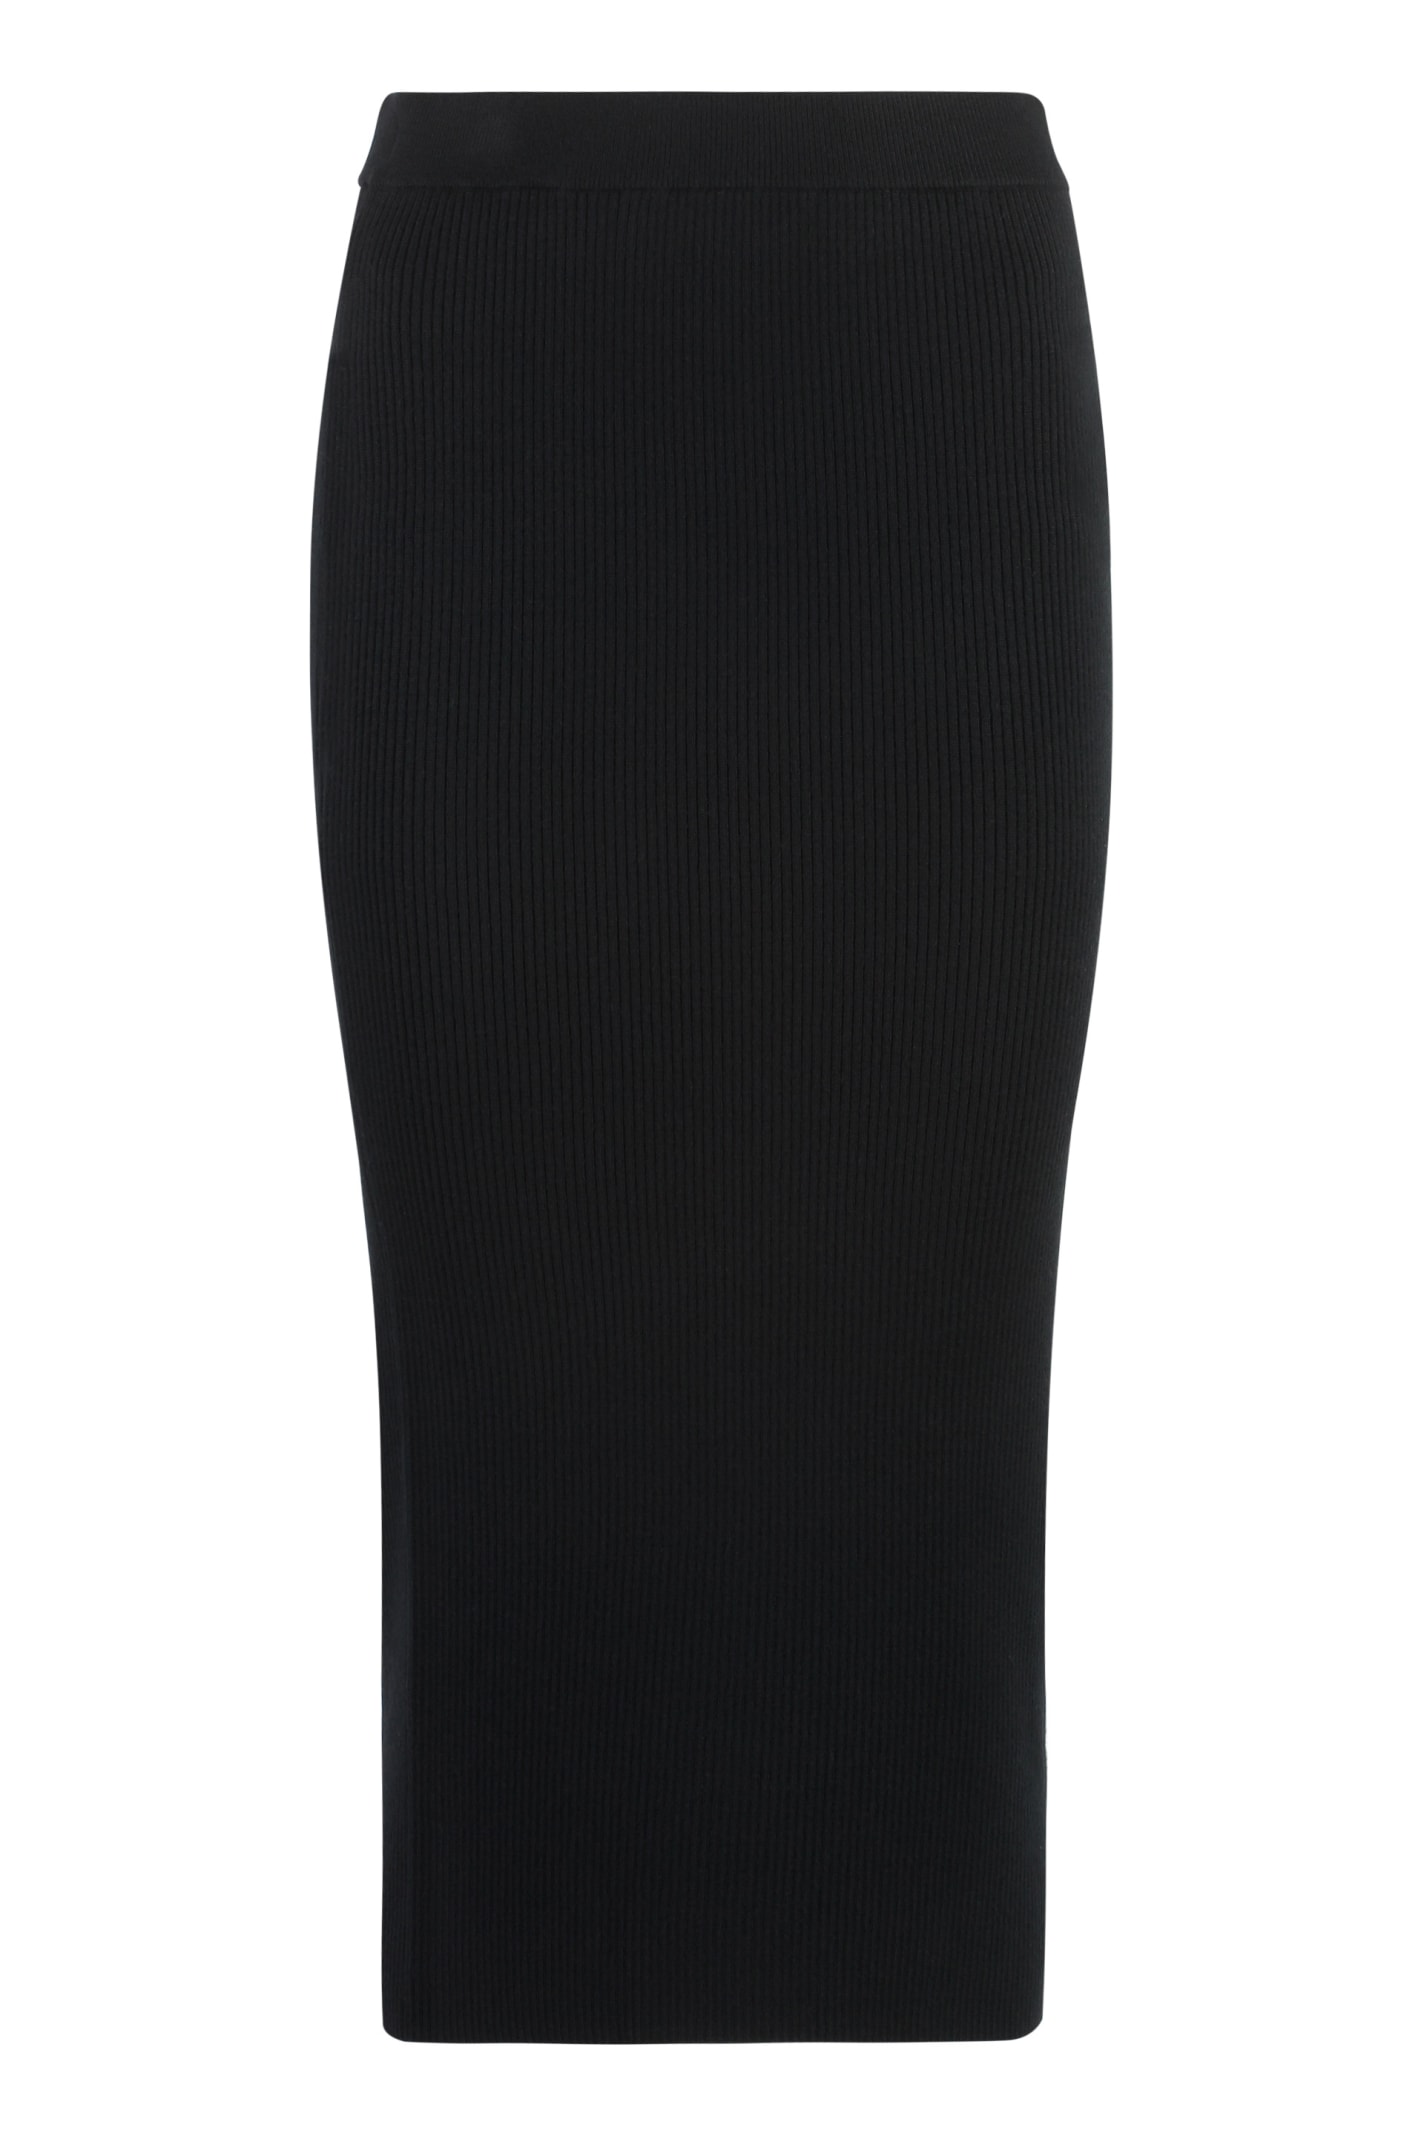 Michael Kors Ribbed Knit Skirt In Black